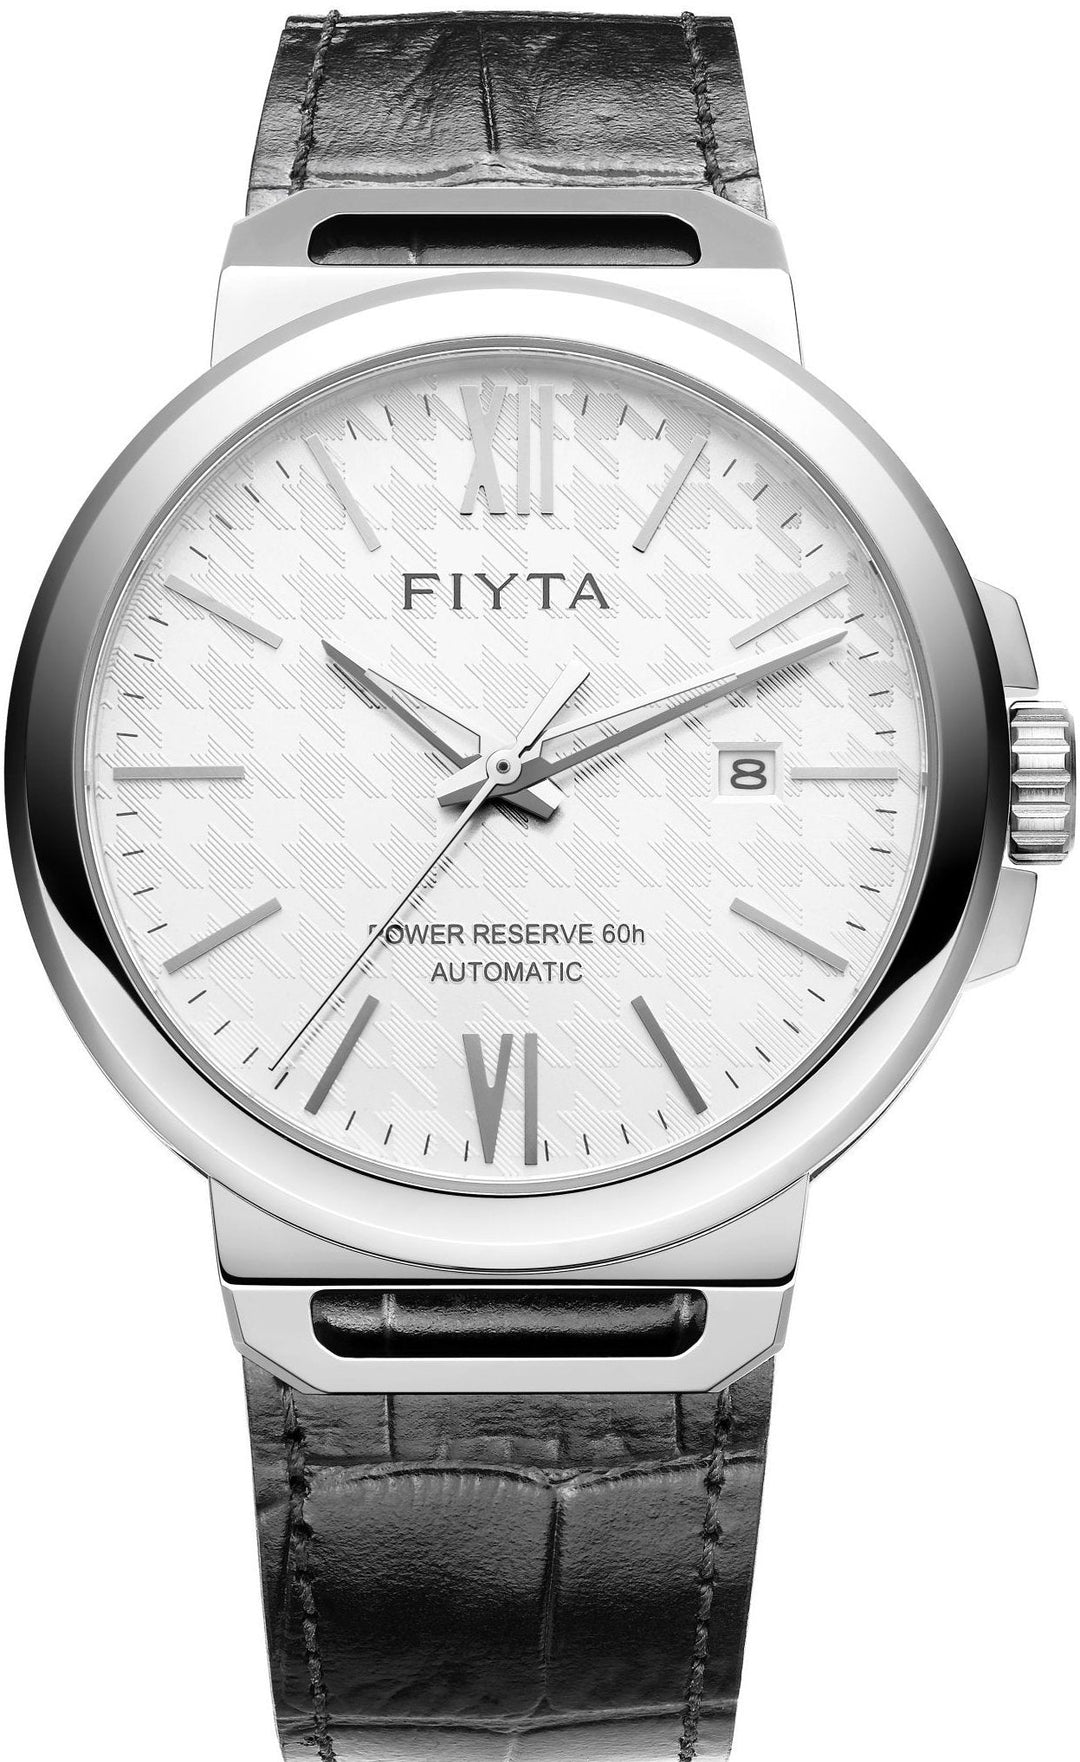 FIYTA Solo Automatic GA852000 - Bartels Watches